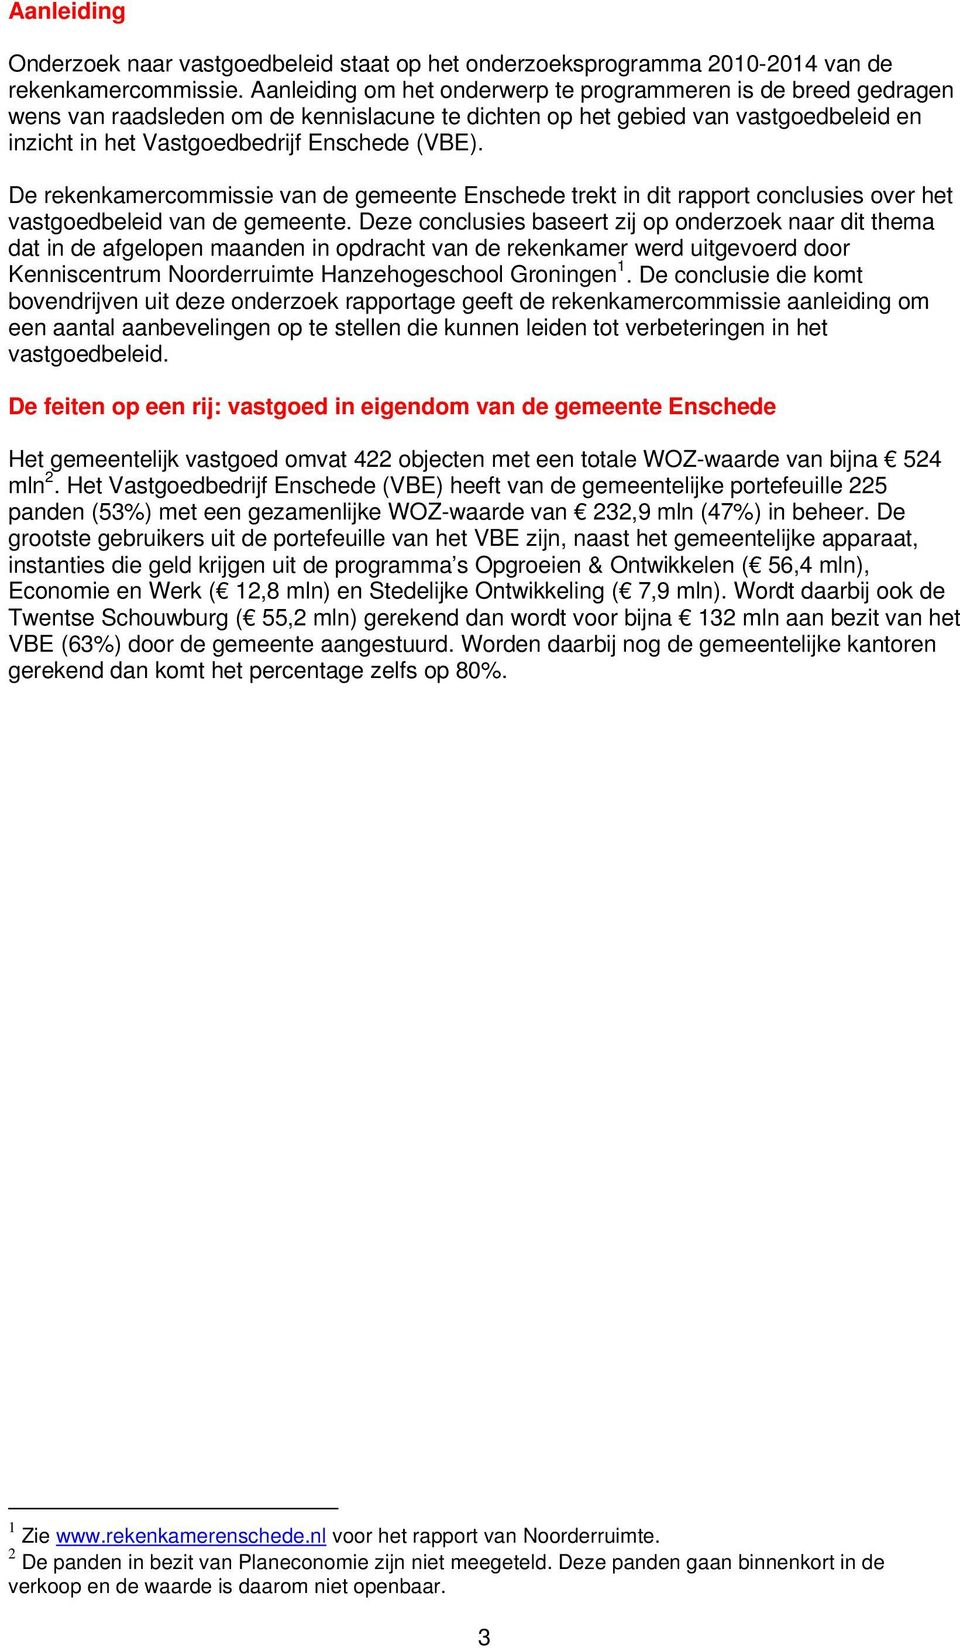 De rekenkamercommissie van de gemeente Enschede trekt in dit rapport conclusies over het vastgoedbeleid van de gemeente.